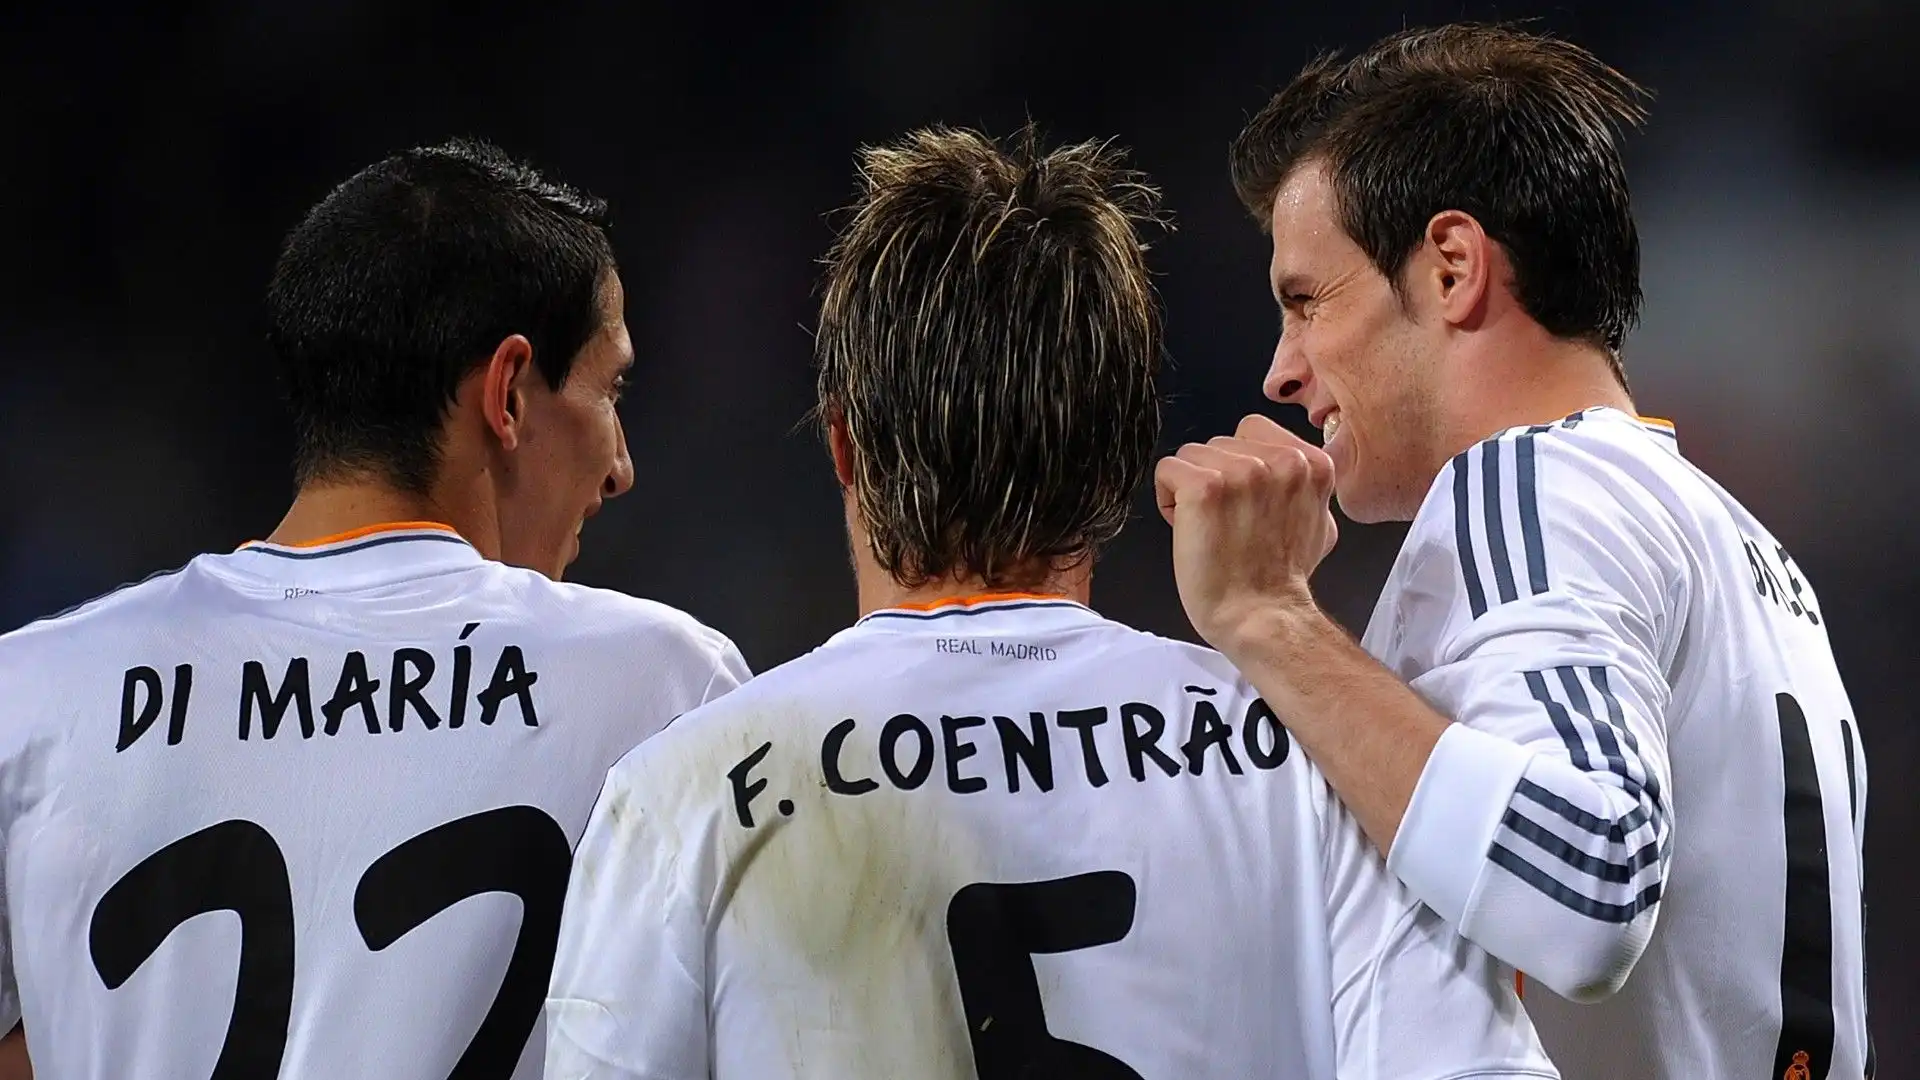 Coentrão è un grande amico del suo connazionale Cristiano Ronaldo